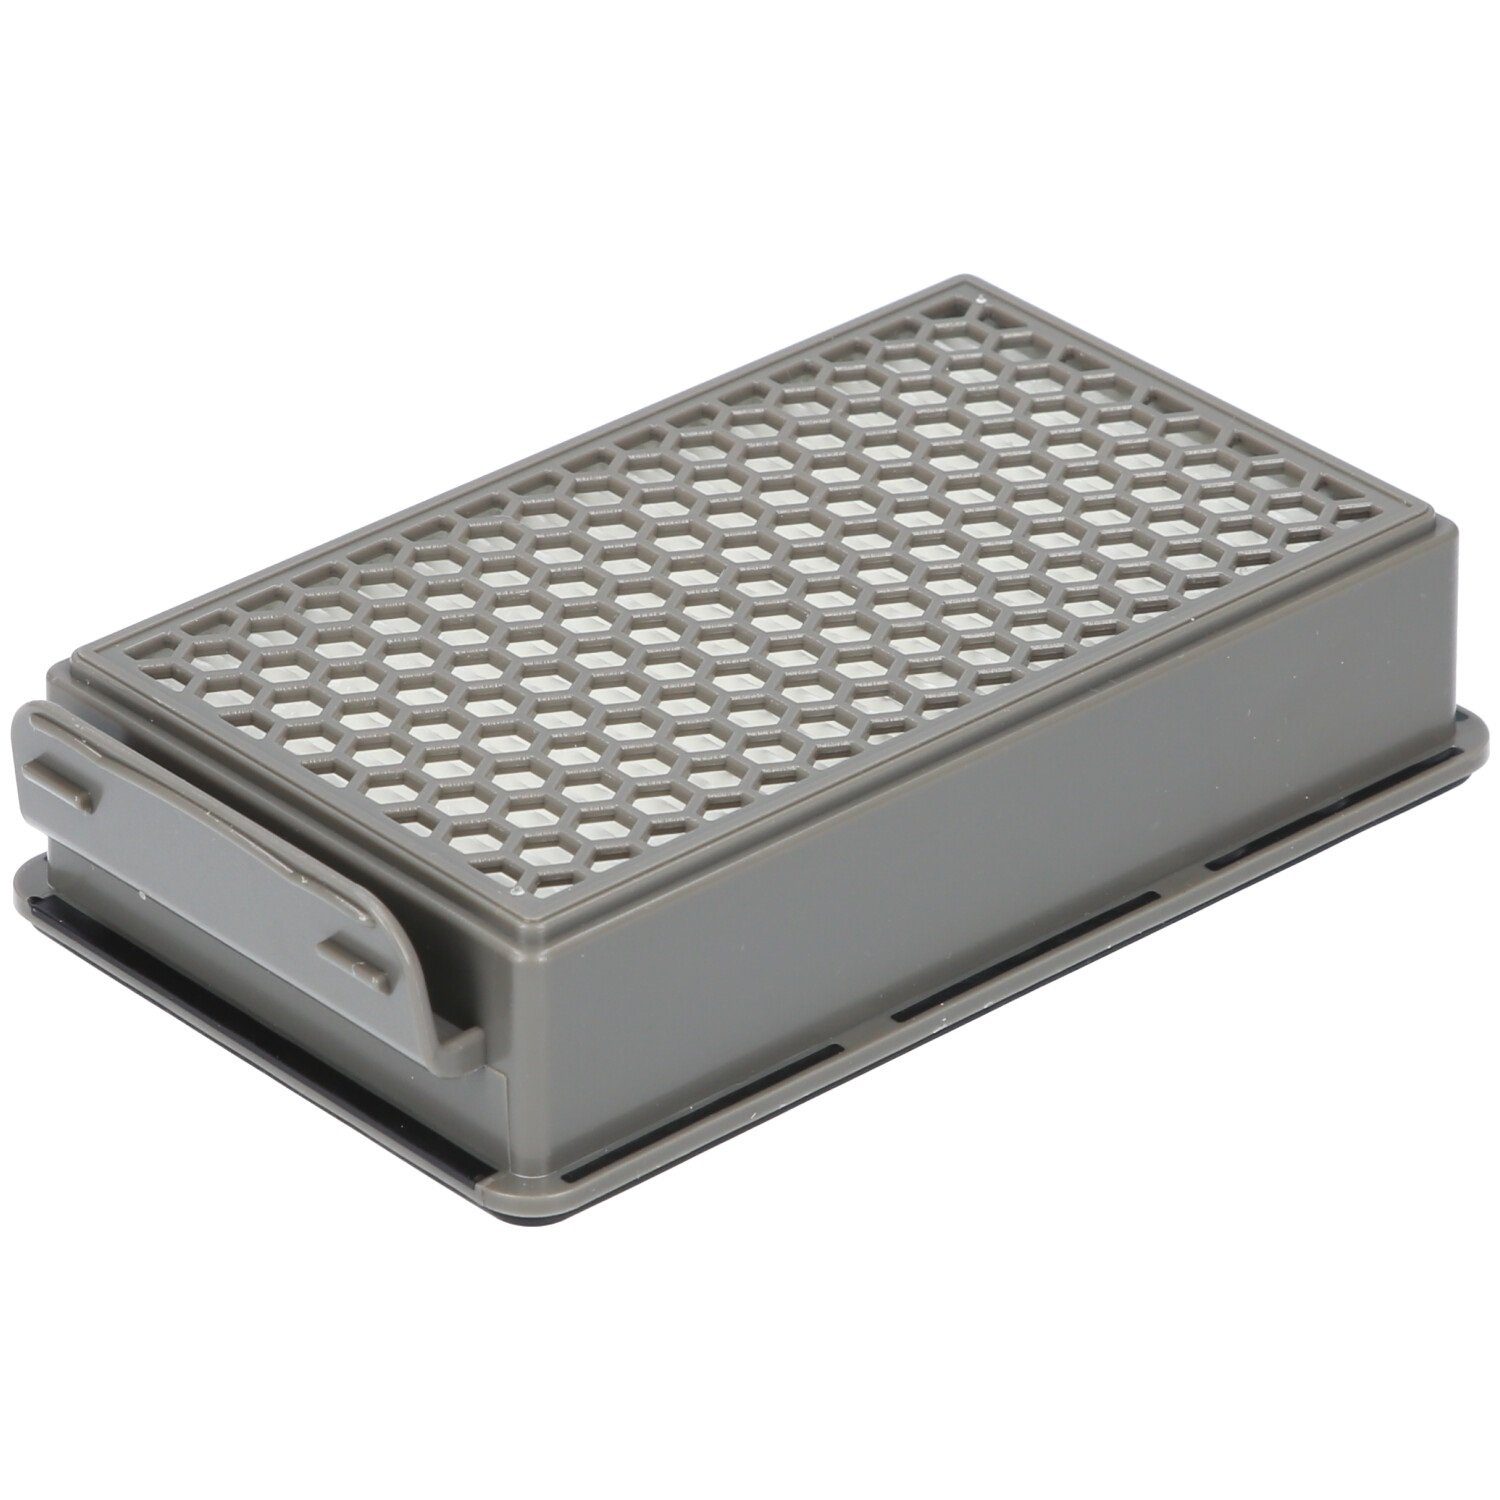 Filter-Set SG3751WA Filterkassette, ZR005901 für Staubsauger, für Rundfilter, Samurai 1x geeignet McFilter 1x Alternative